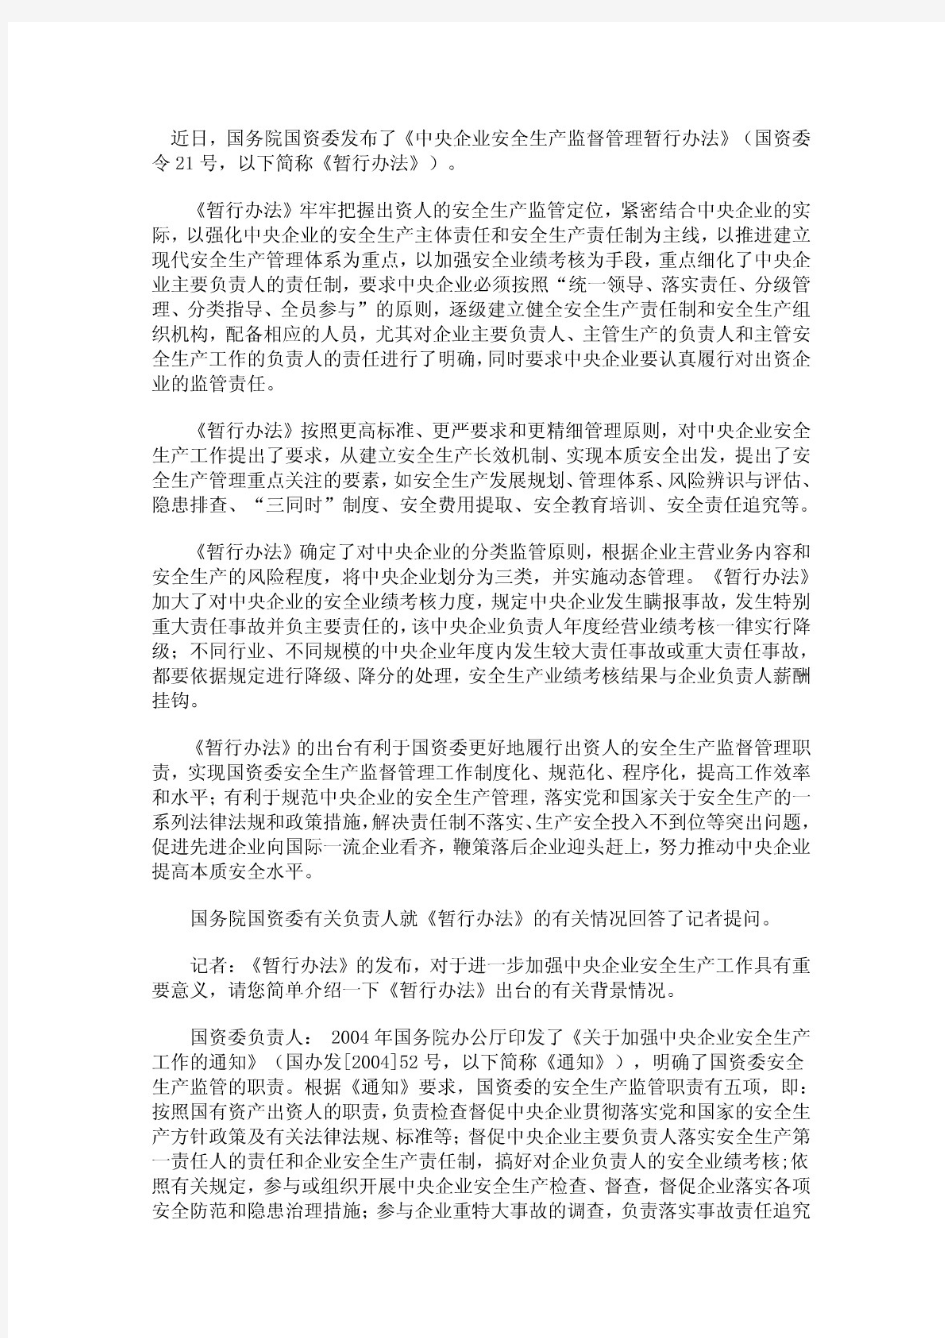 国资委21号令《中央企业安全生产监督管理暂行办法》